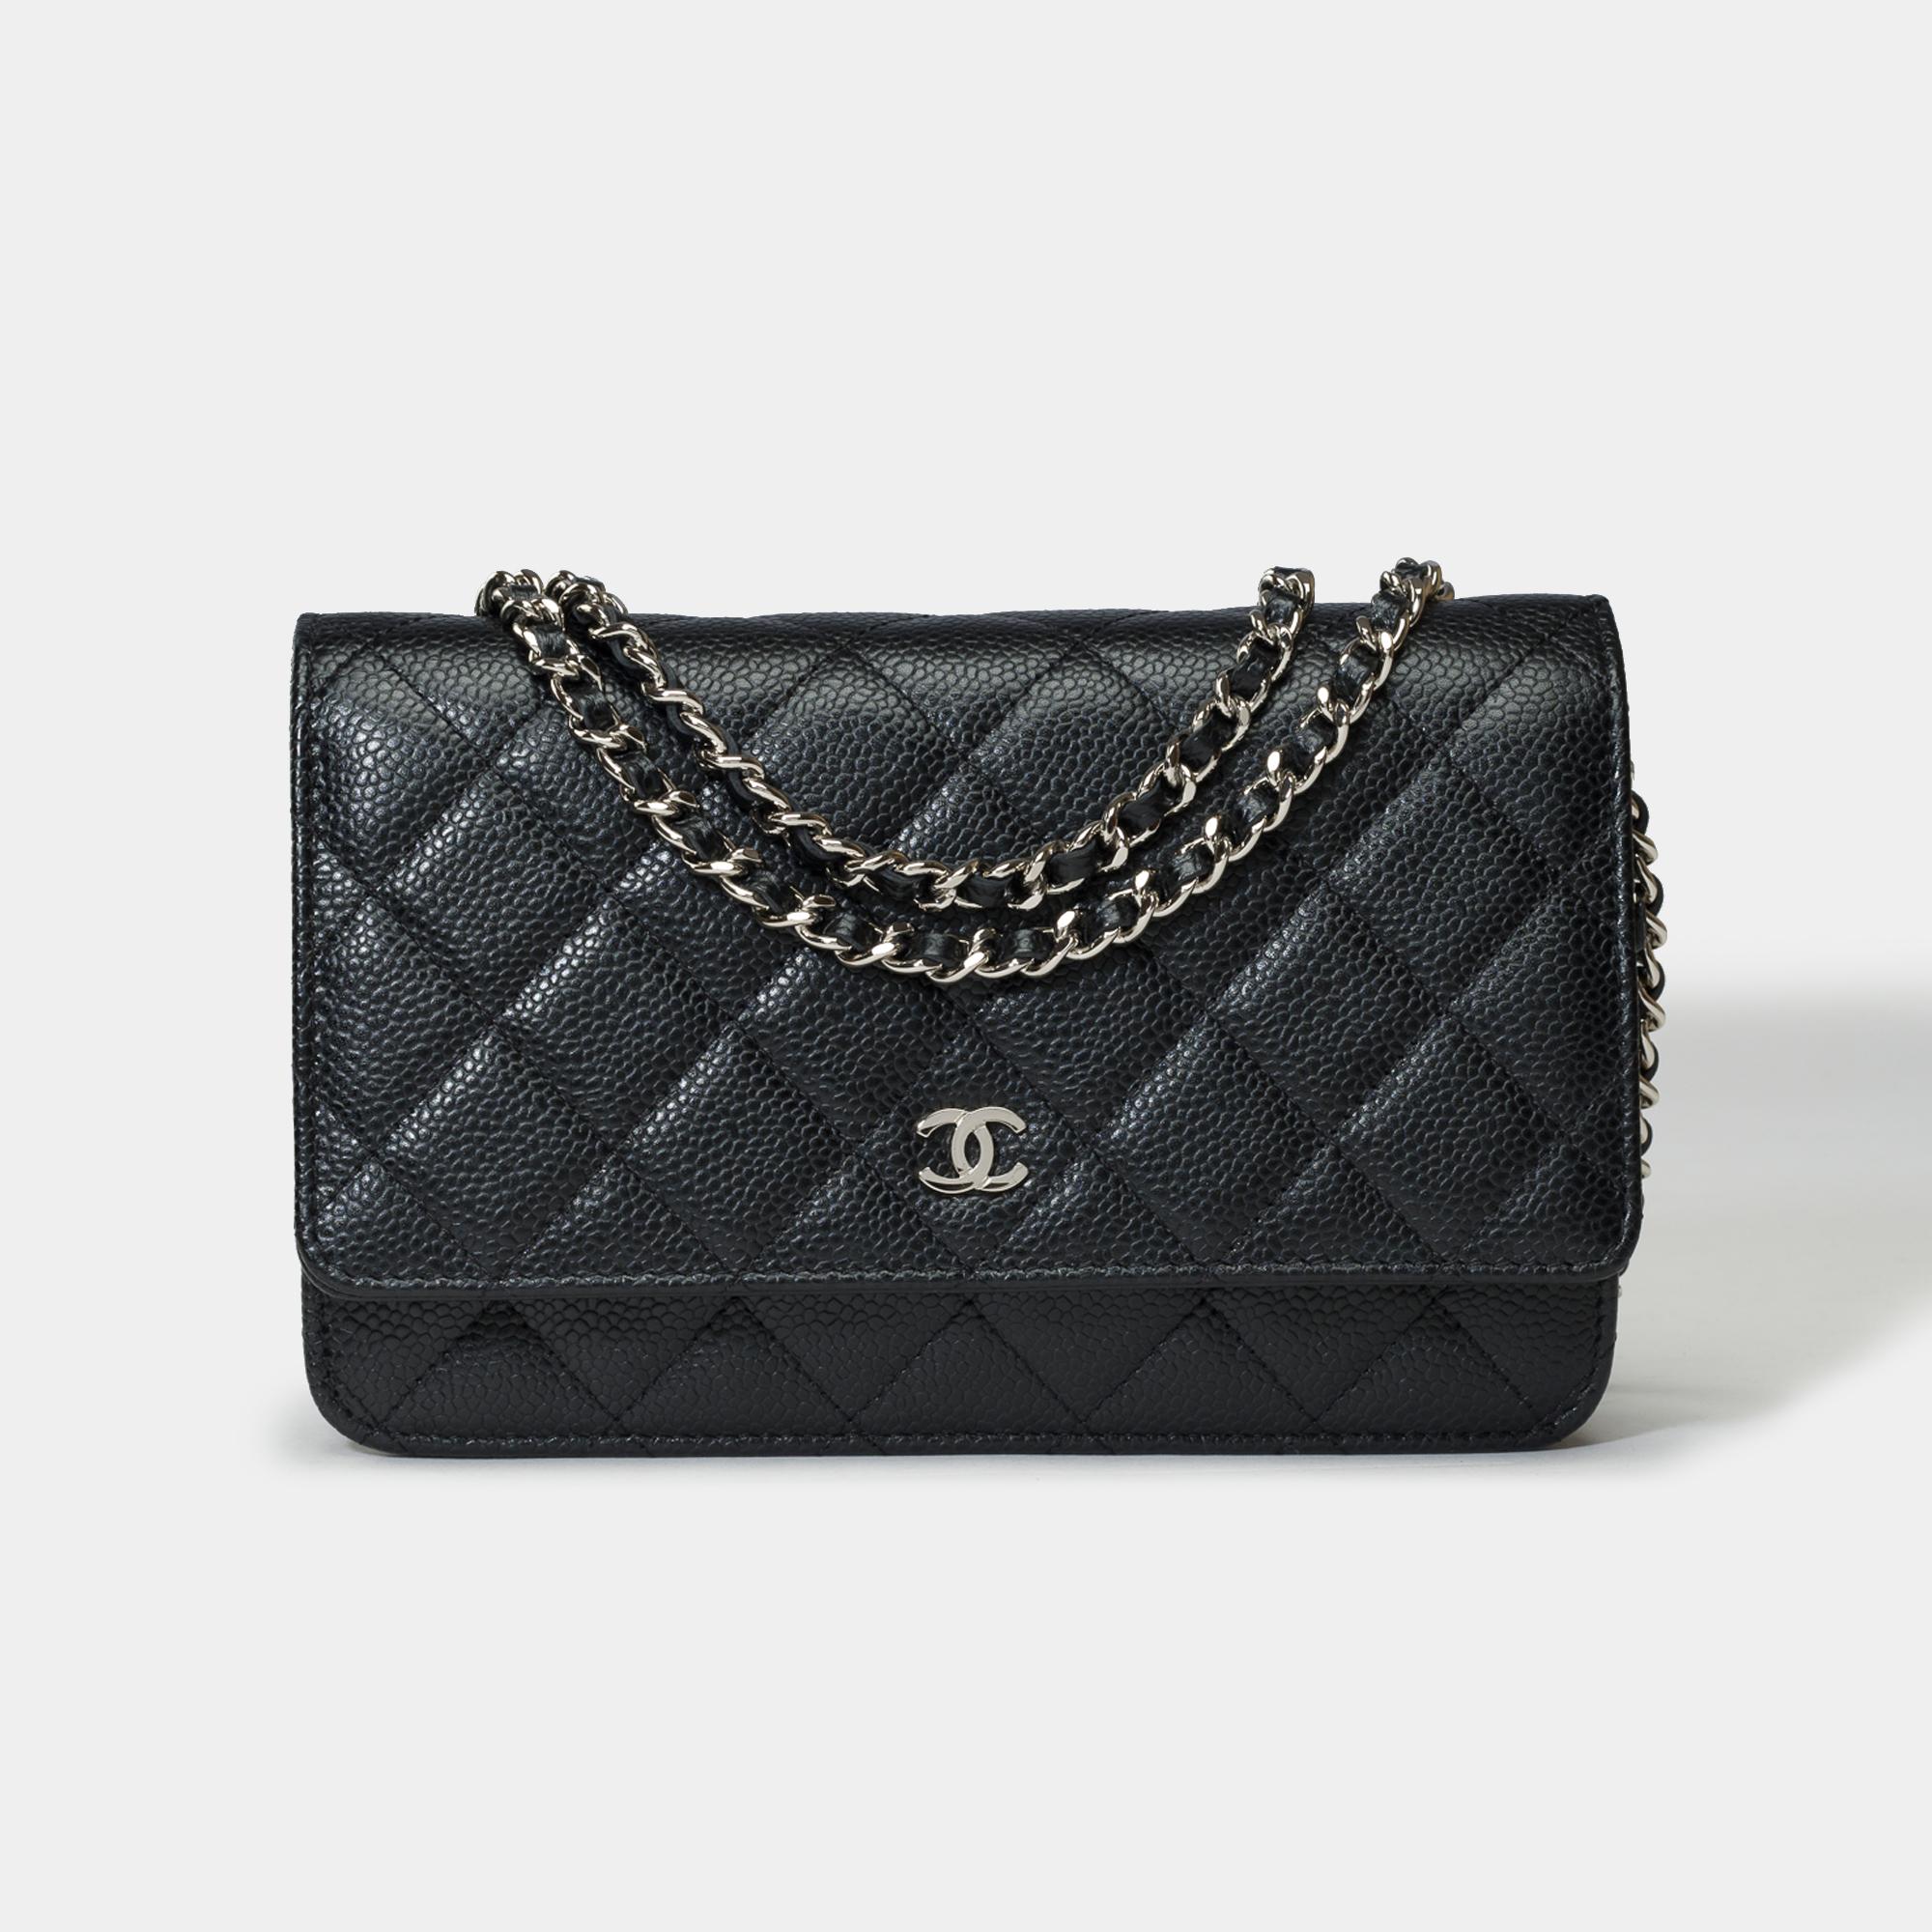 Magnifique sac à bandoulière Chanel Wallet On Chain (WOC) en cuir caviar matelassé noir, garniture en métal argenté, chaîne en métal argenté entrelacée de cuir noir permettant un portage à l'épaule ou en bandoulière.

Une poche plaquée au dos du